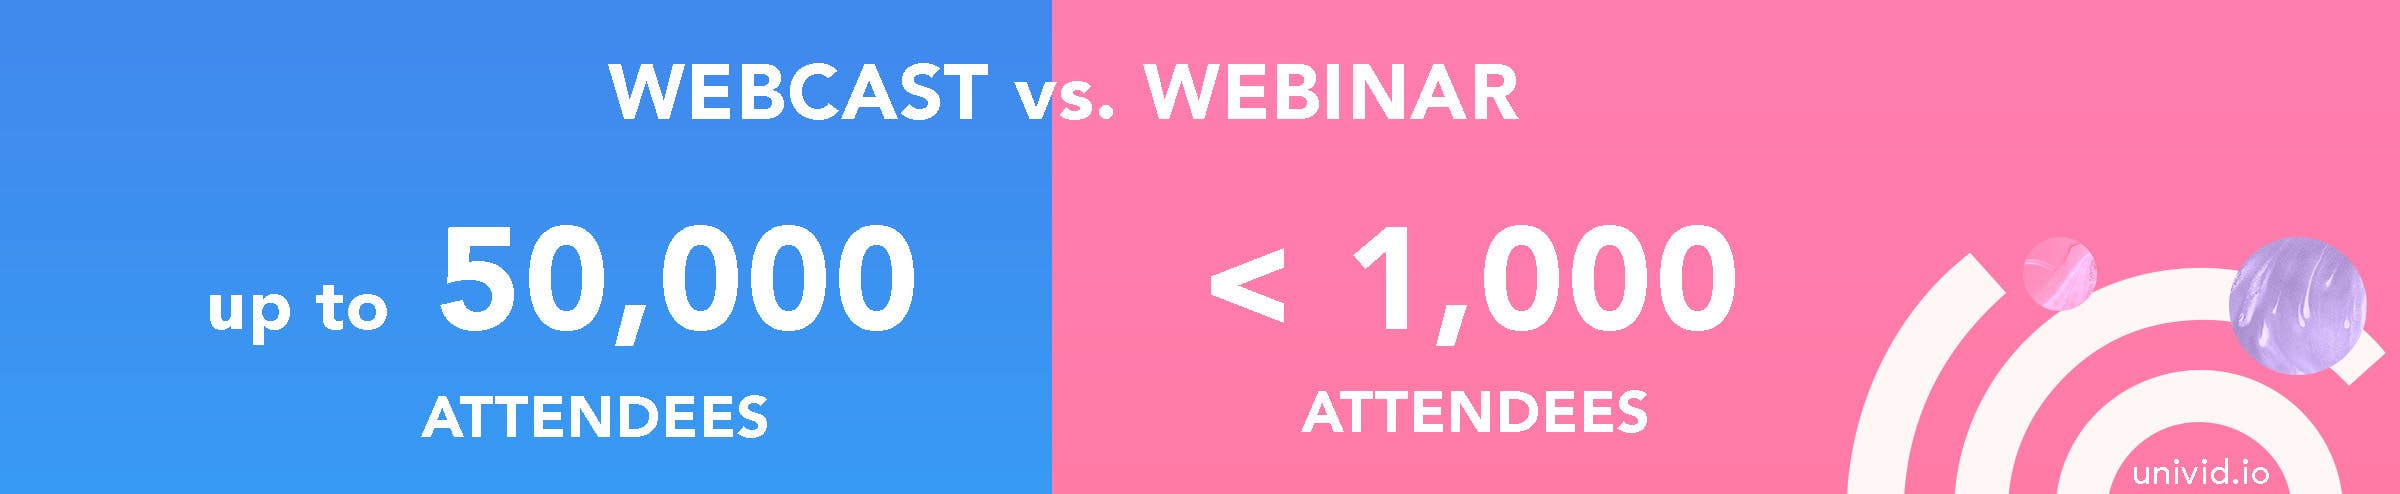 Webcast vs webinar